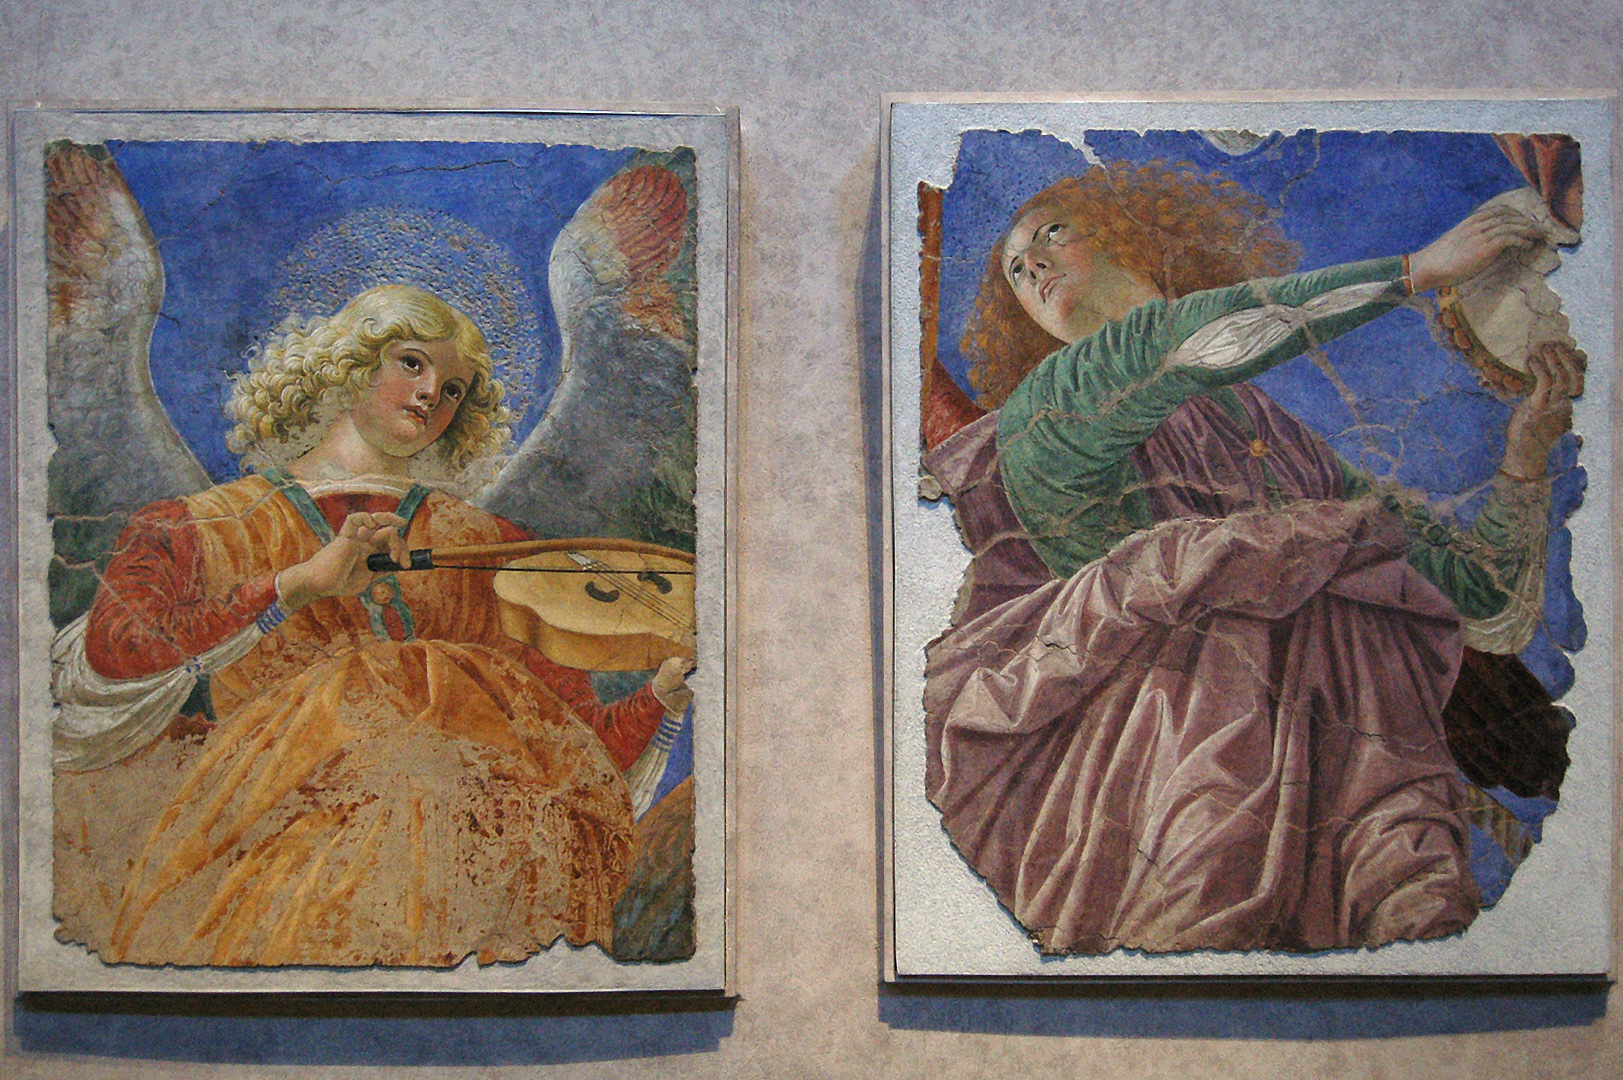 Musicerende engelen. Ca. 1480. Melozzo da Forli, Frescoes by Melozzo da Forli, Rome, Italy